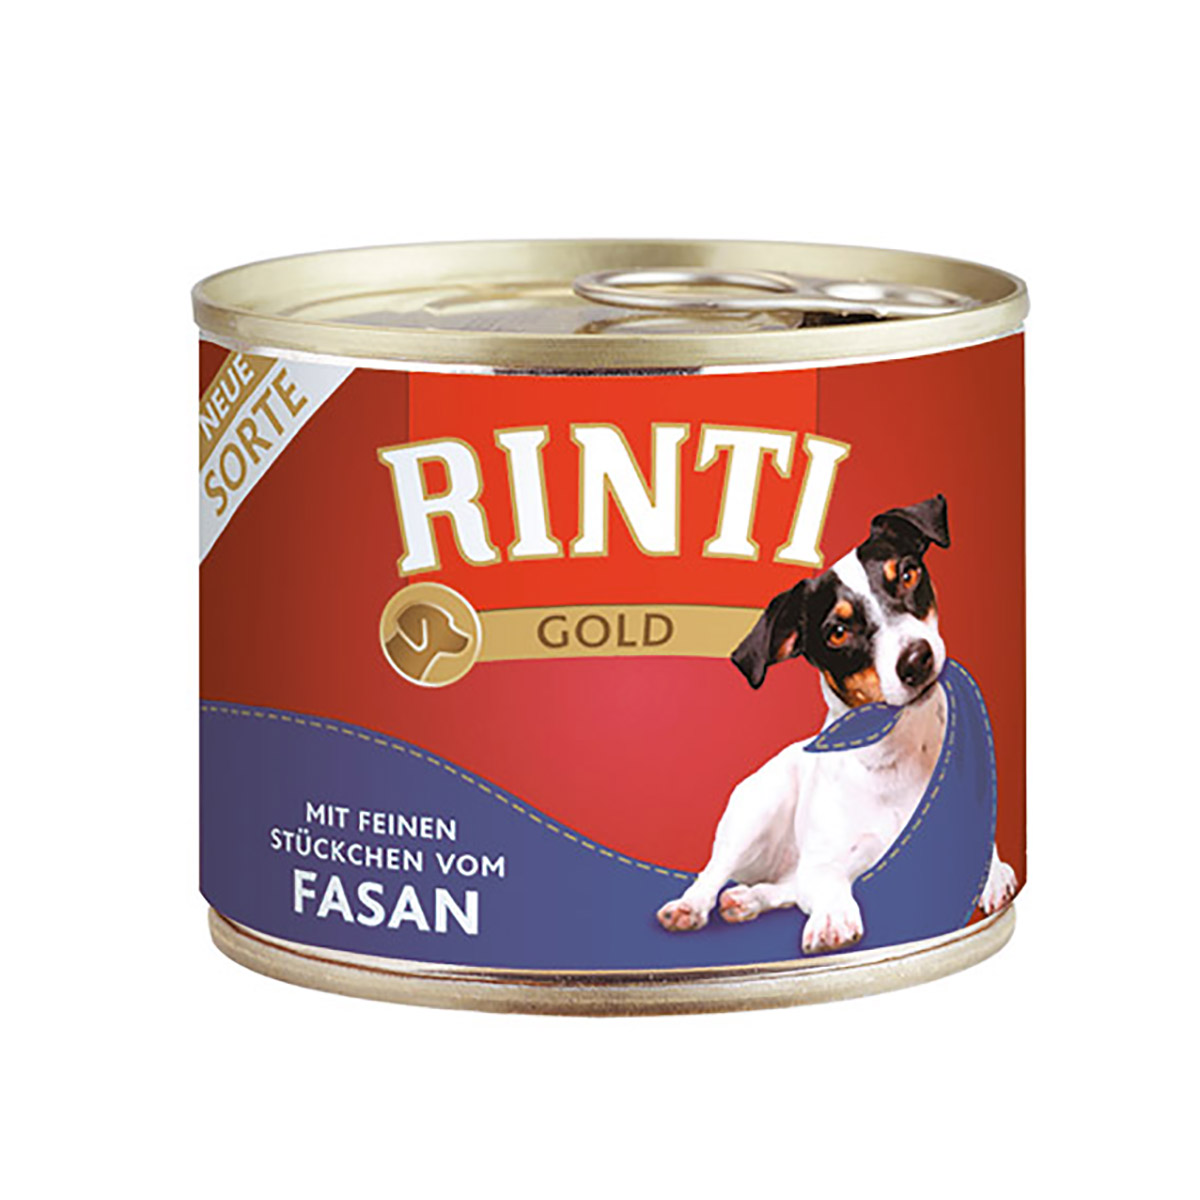 Rinti Gold s jemnými kousky bažantího masa